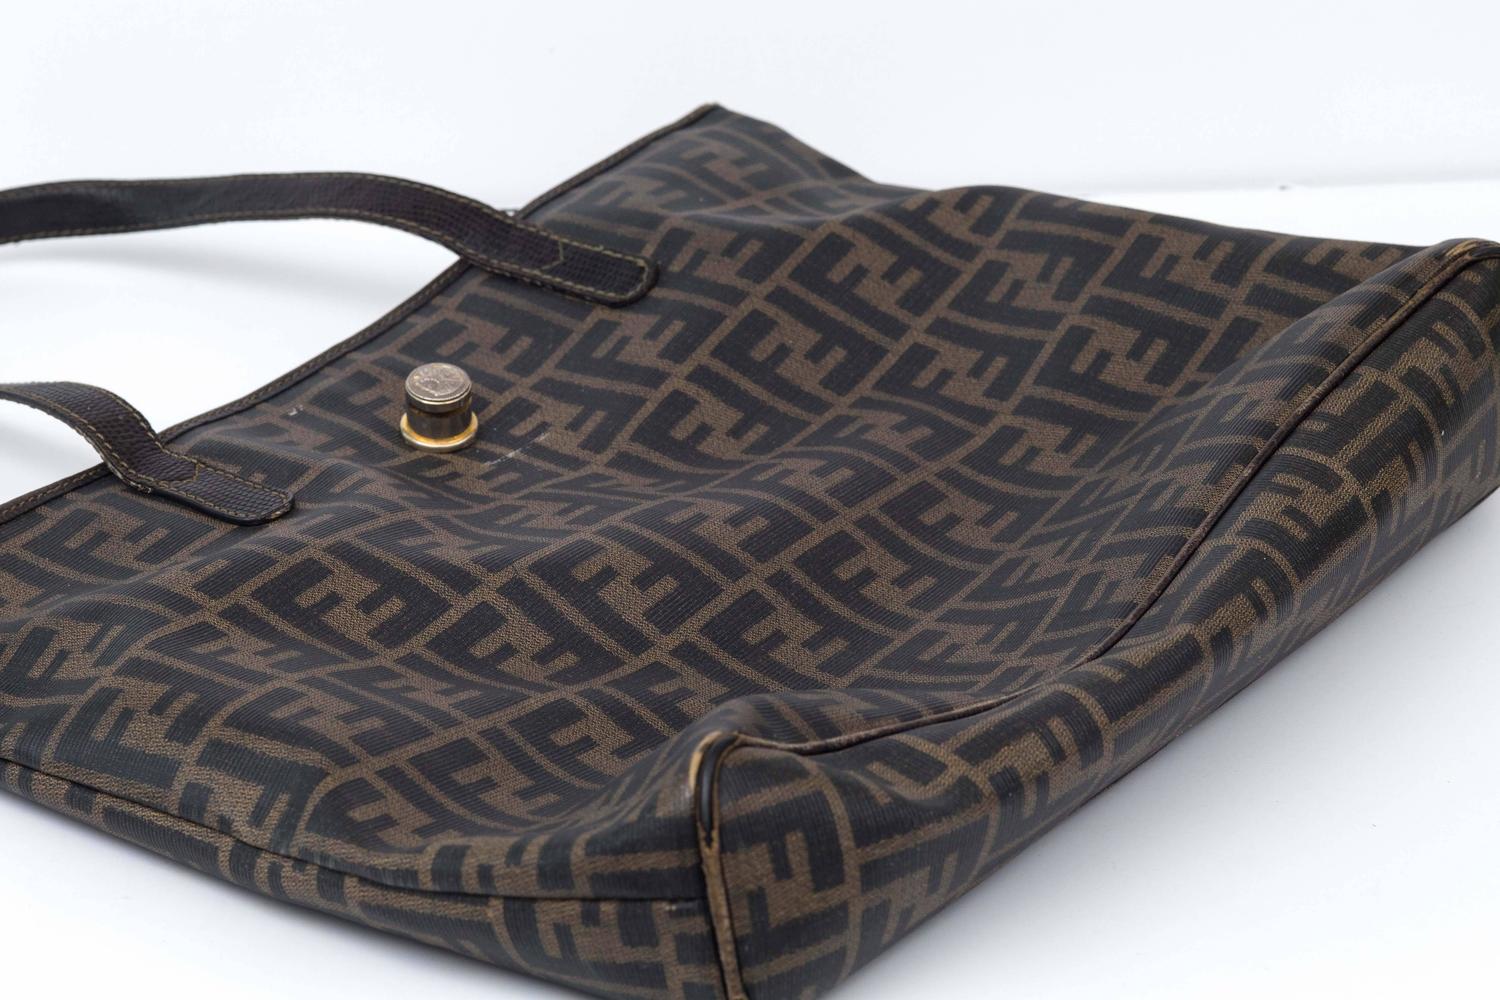 Authentic Vintage Mid-Century Fendi Handbag For Sale at 1stdibs